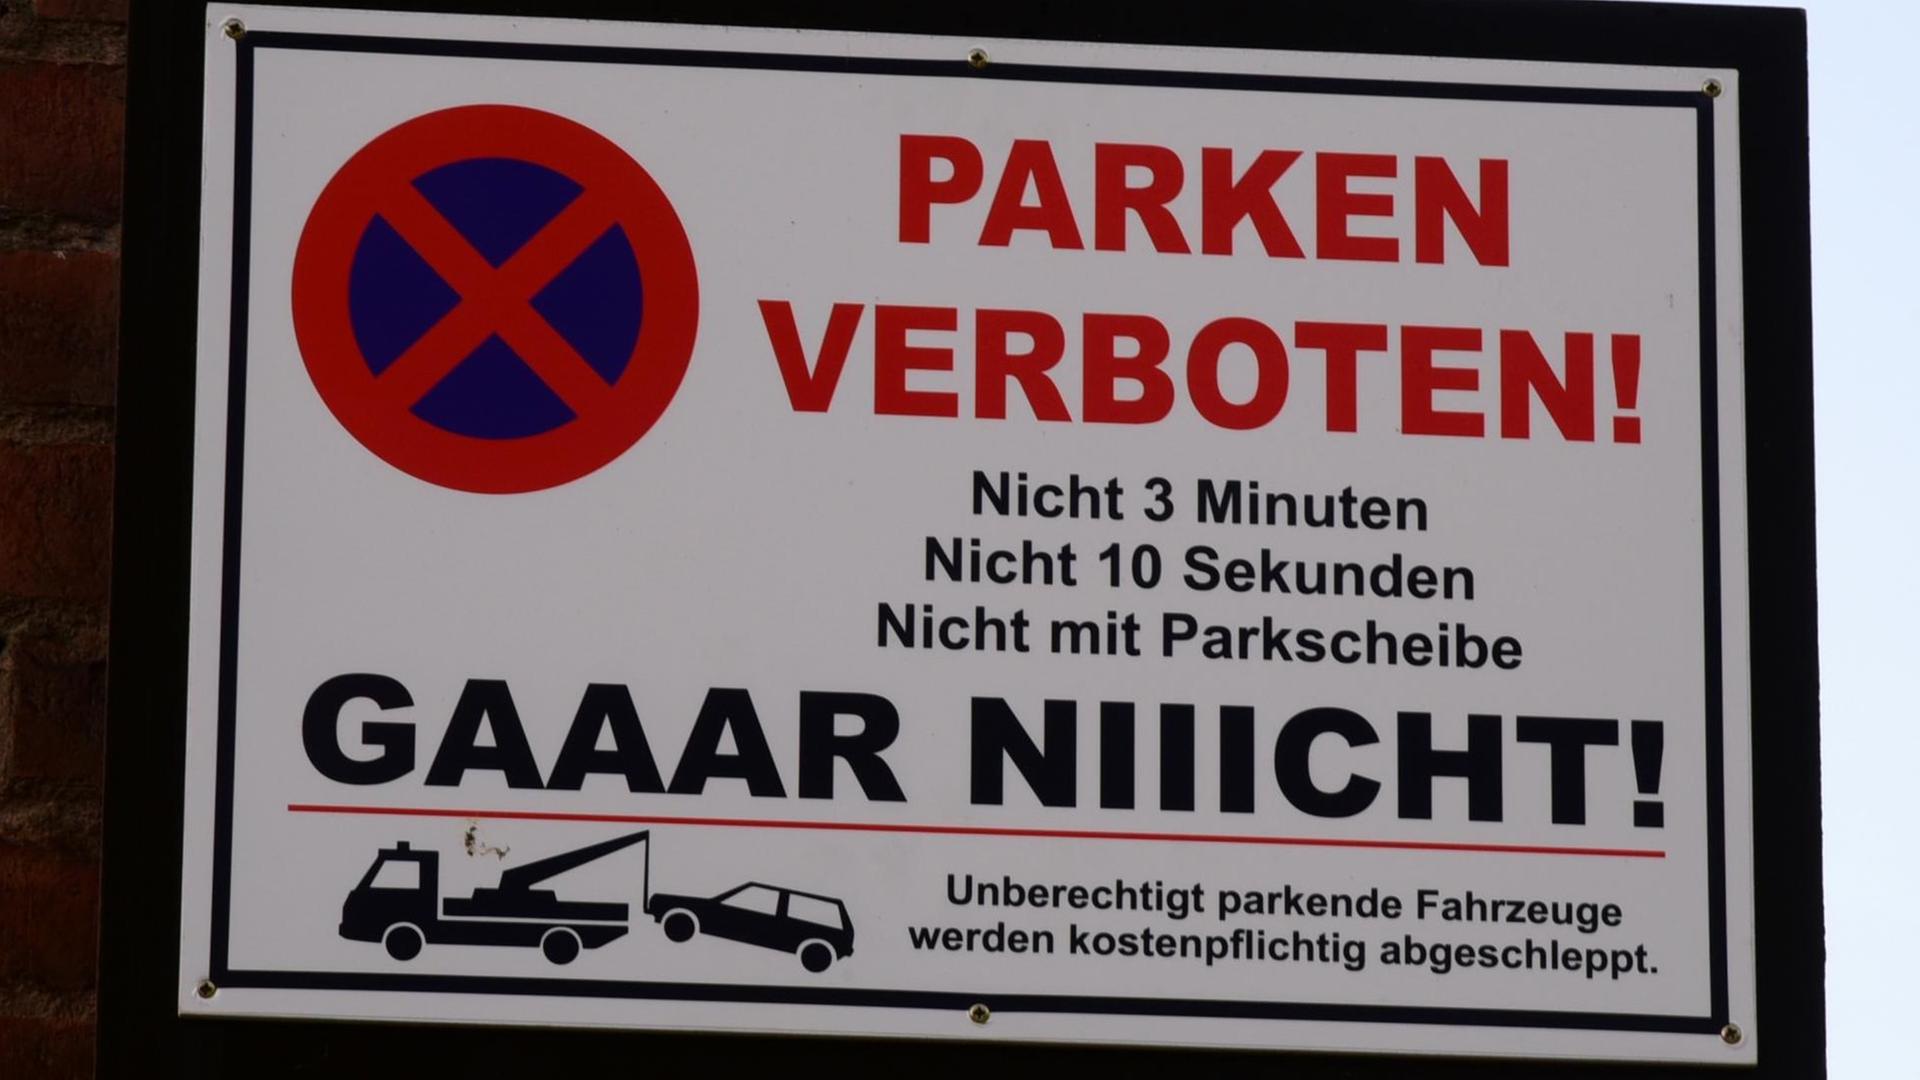 Ein Parkverbotsschild mit der Aufschrift «Parken verboten! Nicht 3 Minuten, nicht 10 Sekunden, nicht mit Parkscheibe. Gaaar niiicht!»